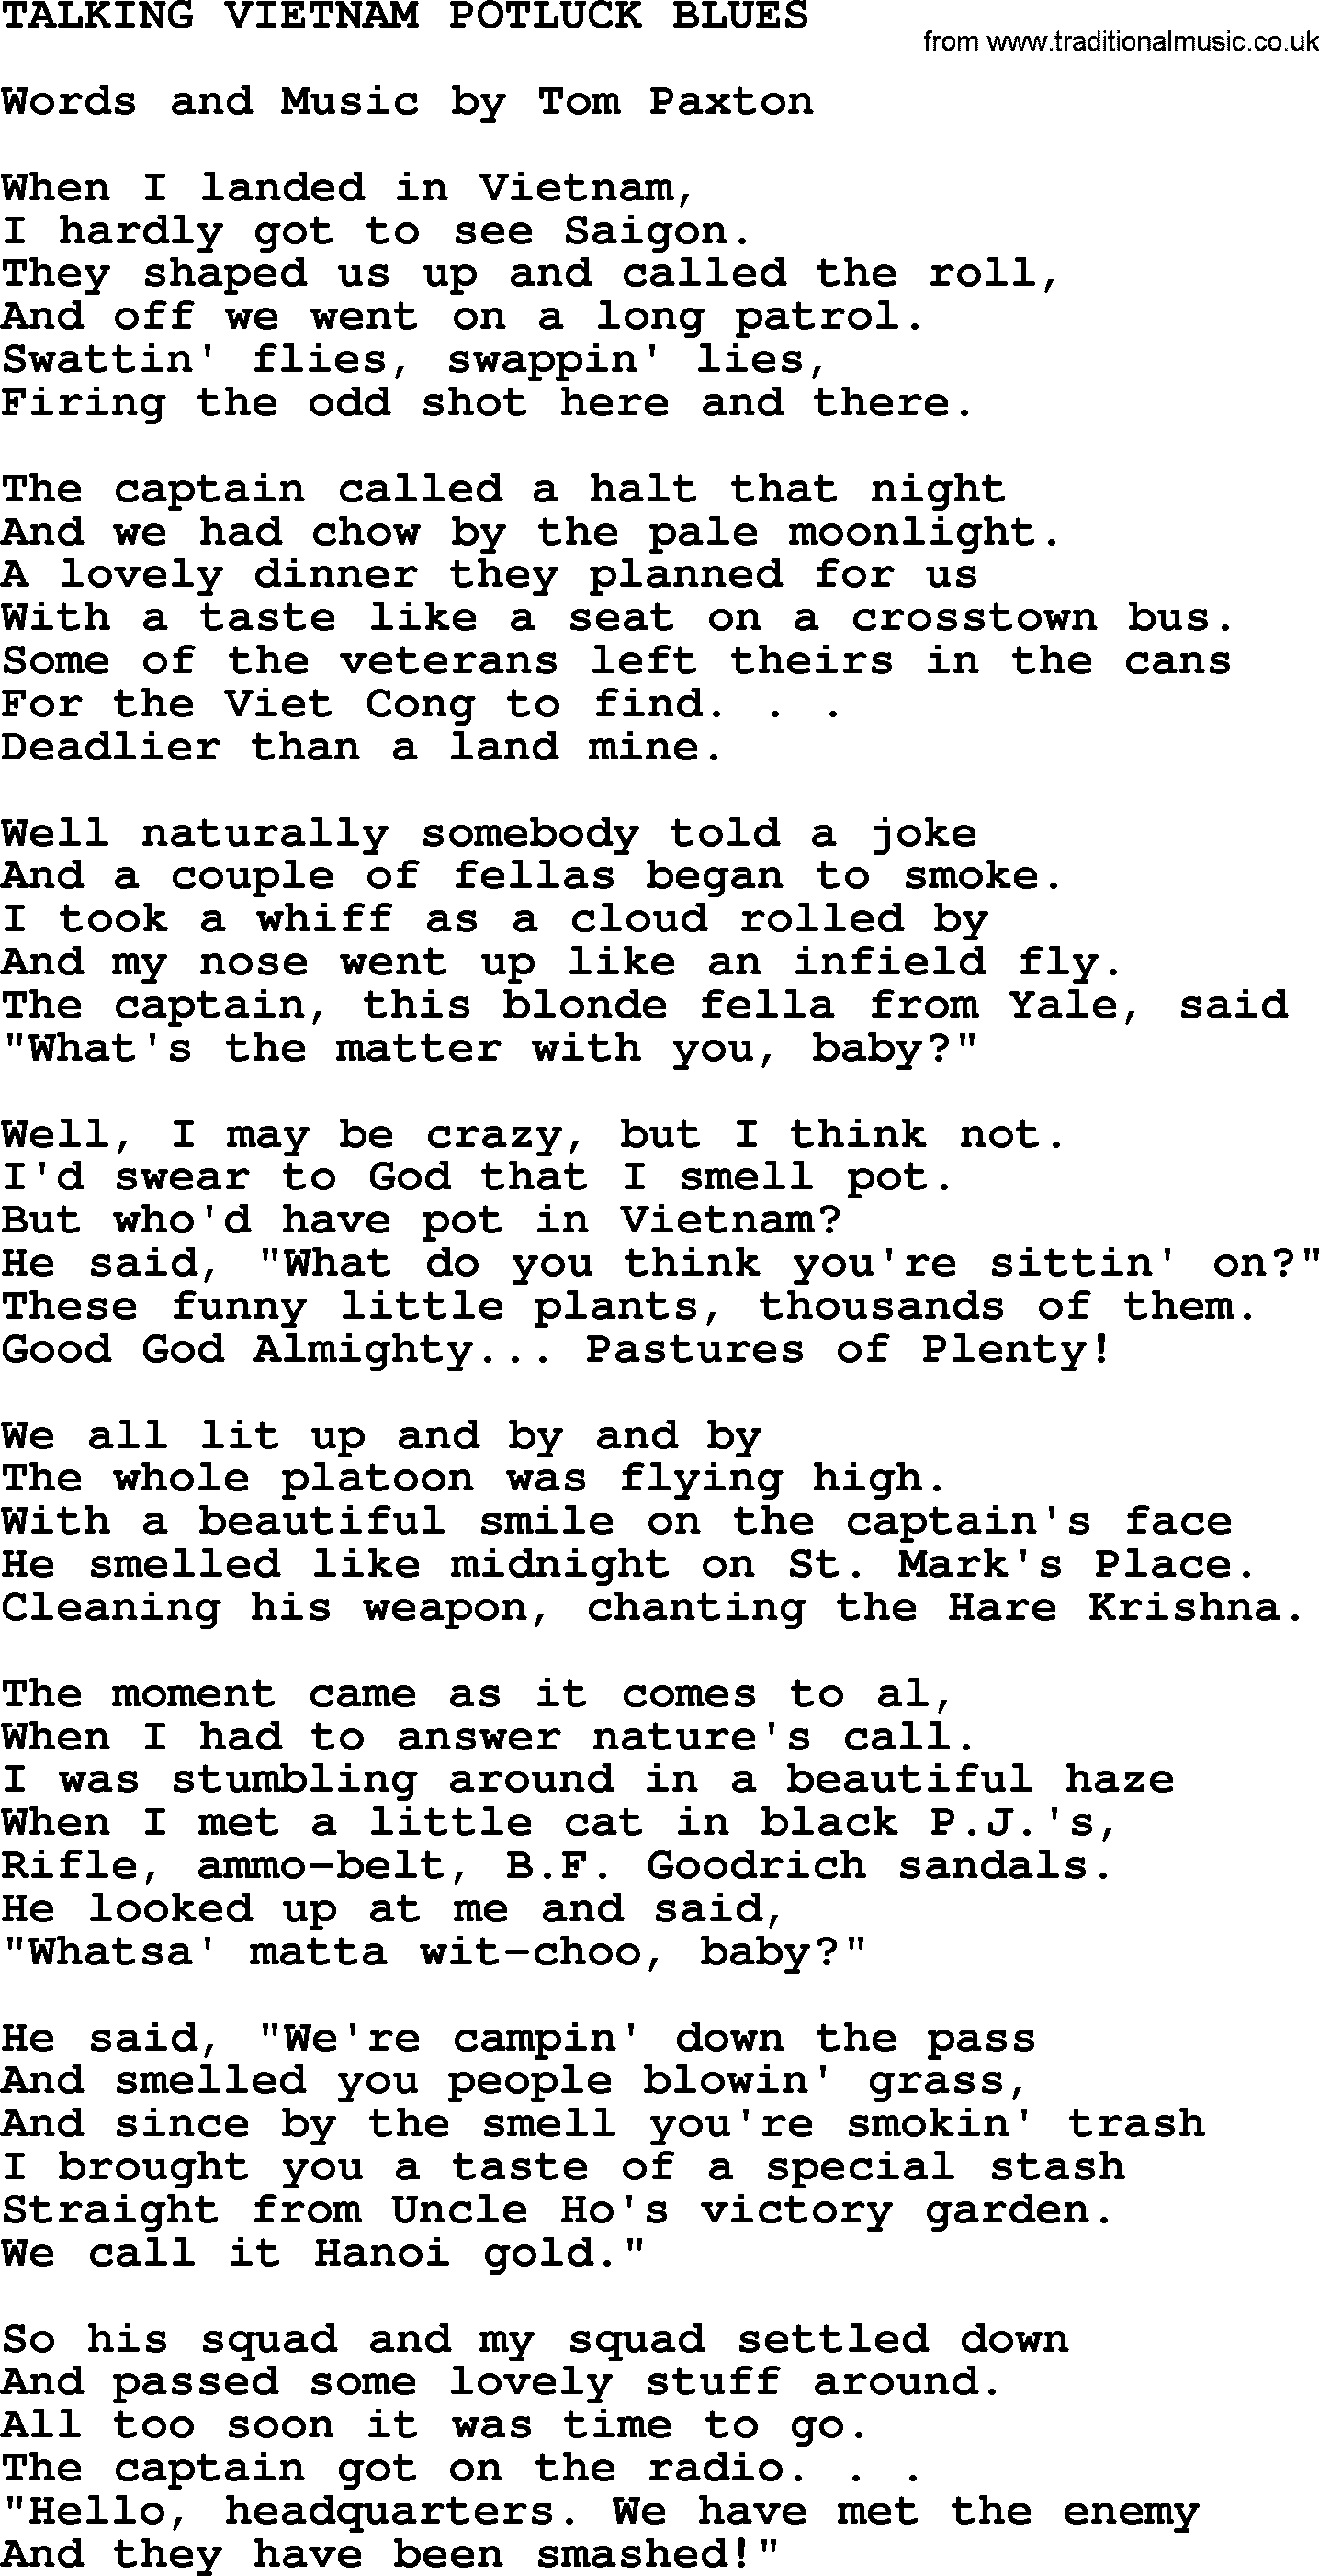 Tom Paxton song: Talking Vietnam Potluck Blues, lyrics